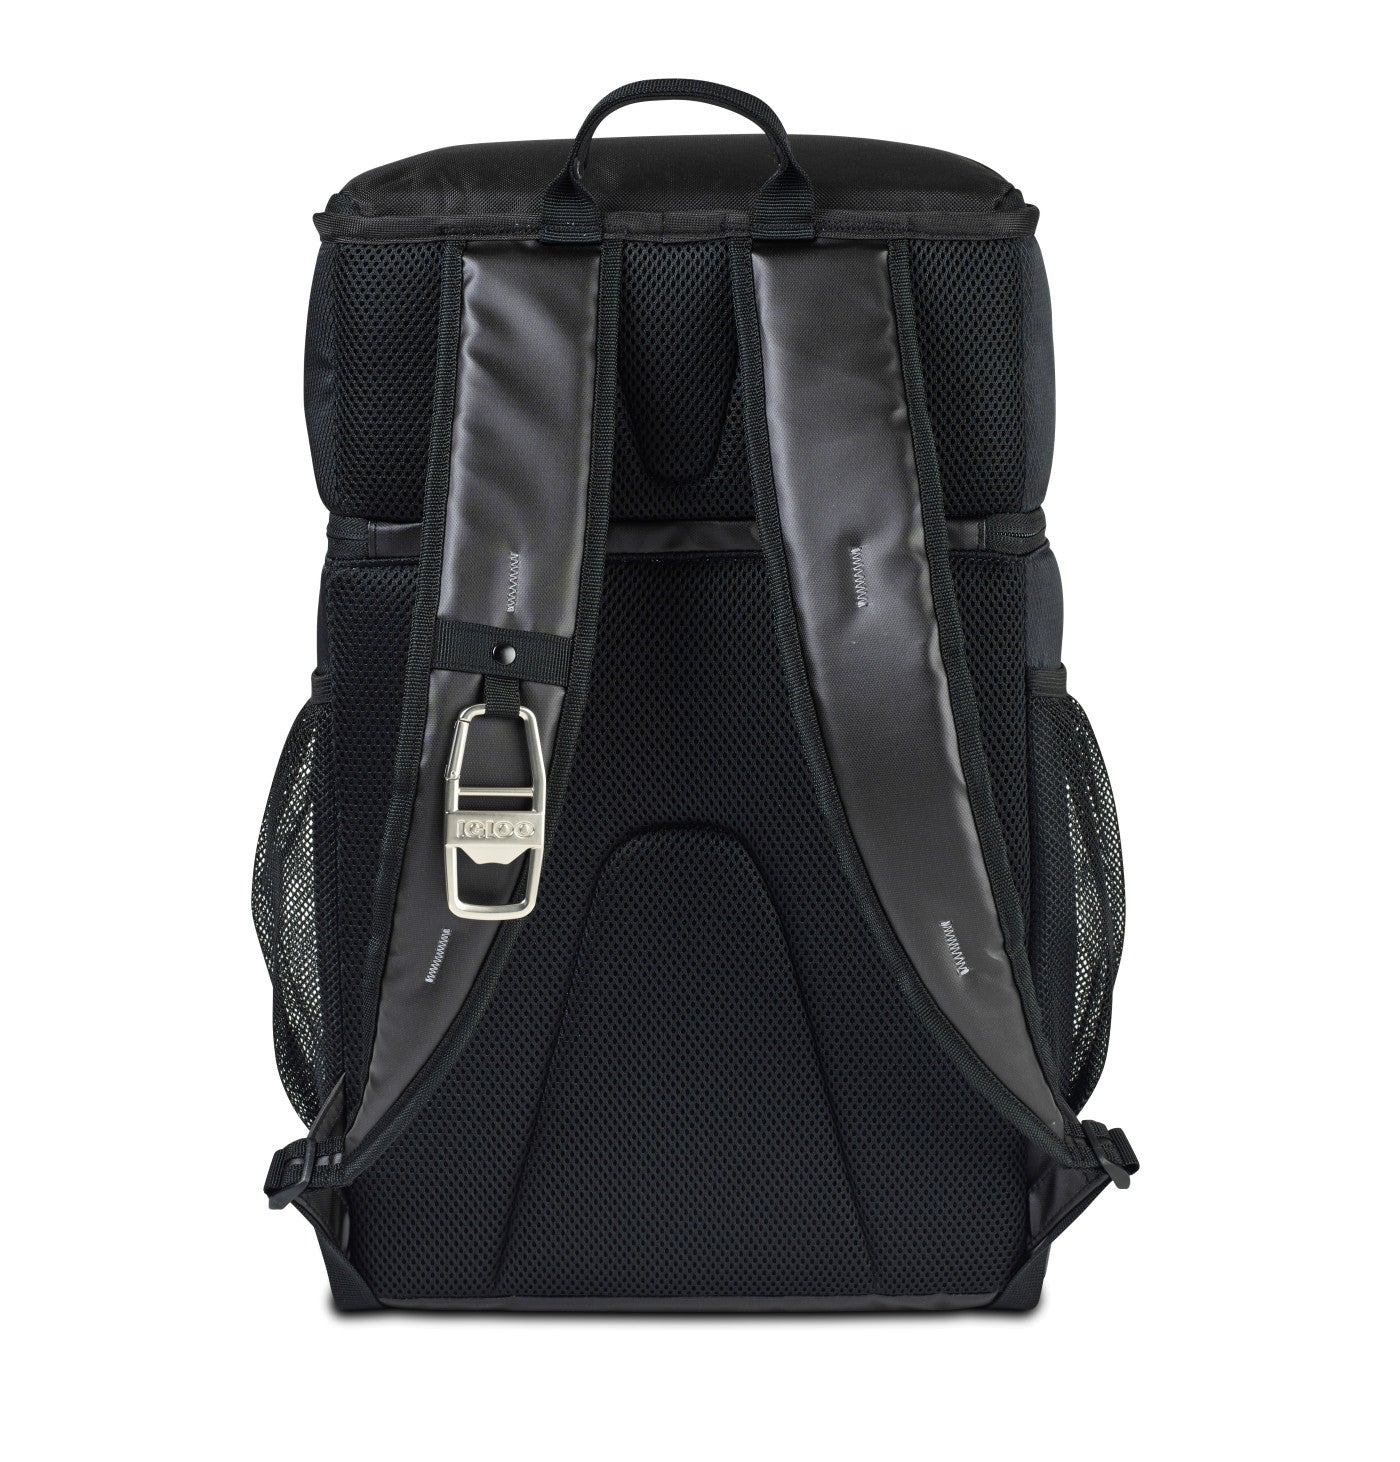 Igloo Maddox Backpack Custom Coolers, Black